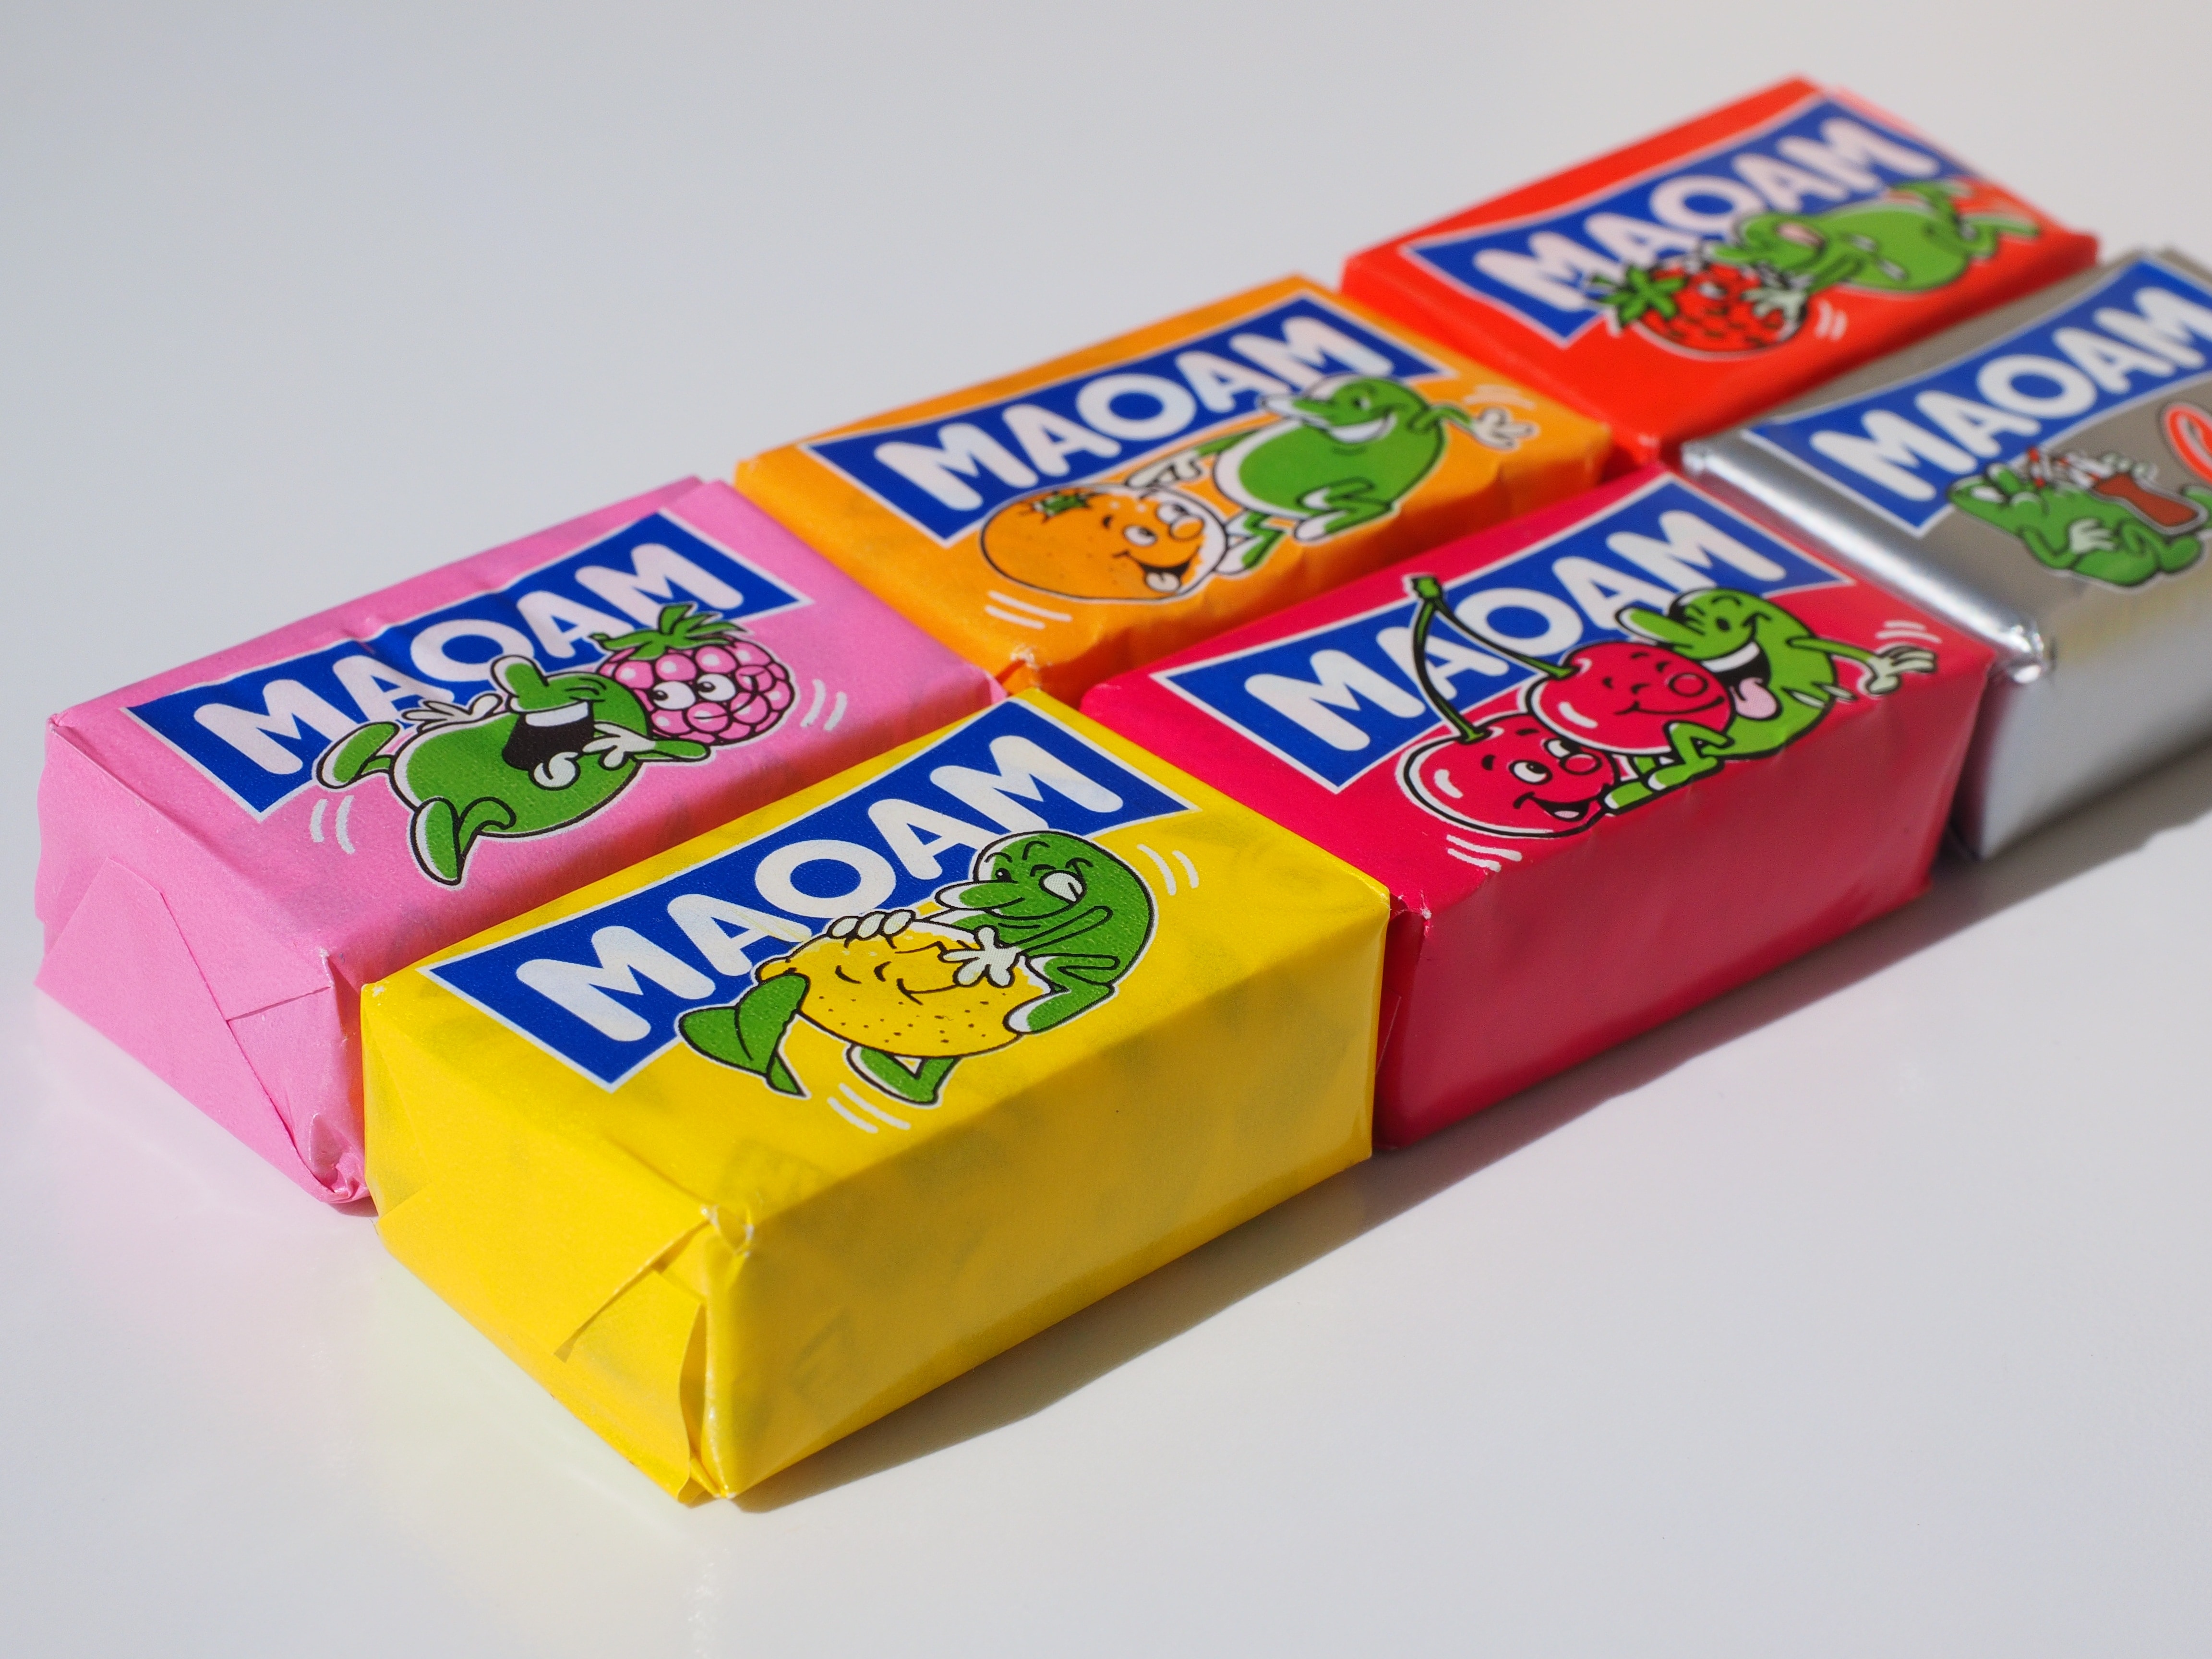 6 piece of maoam candies